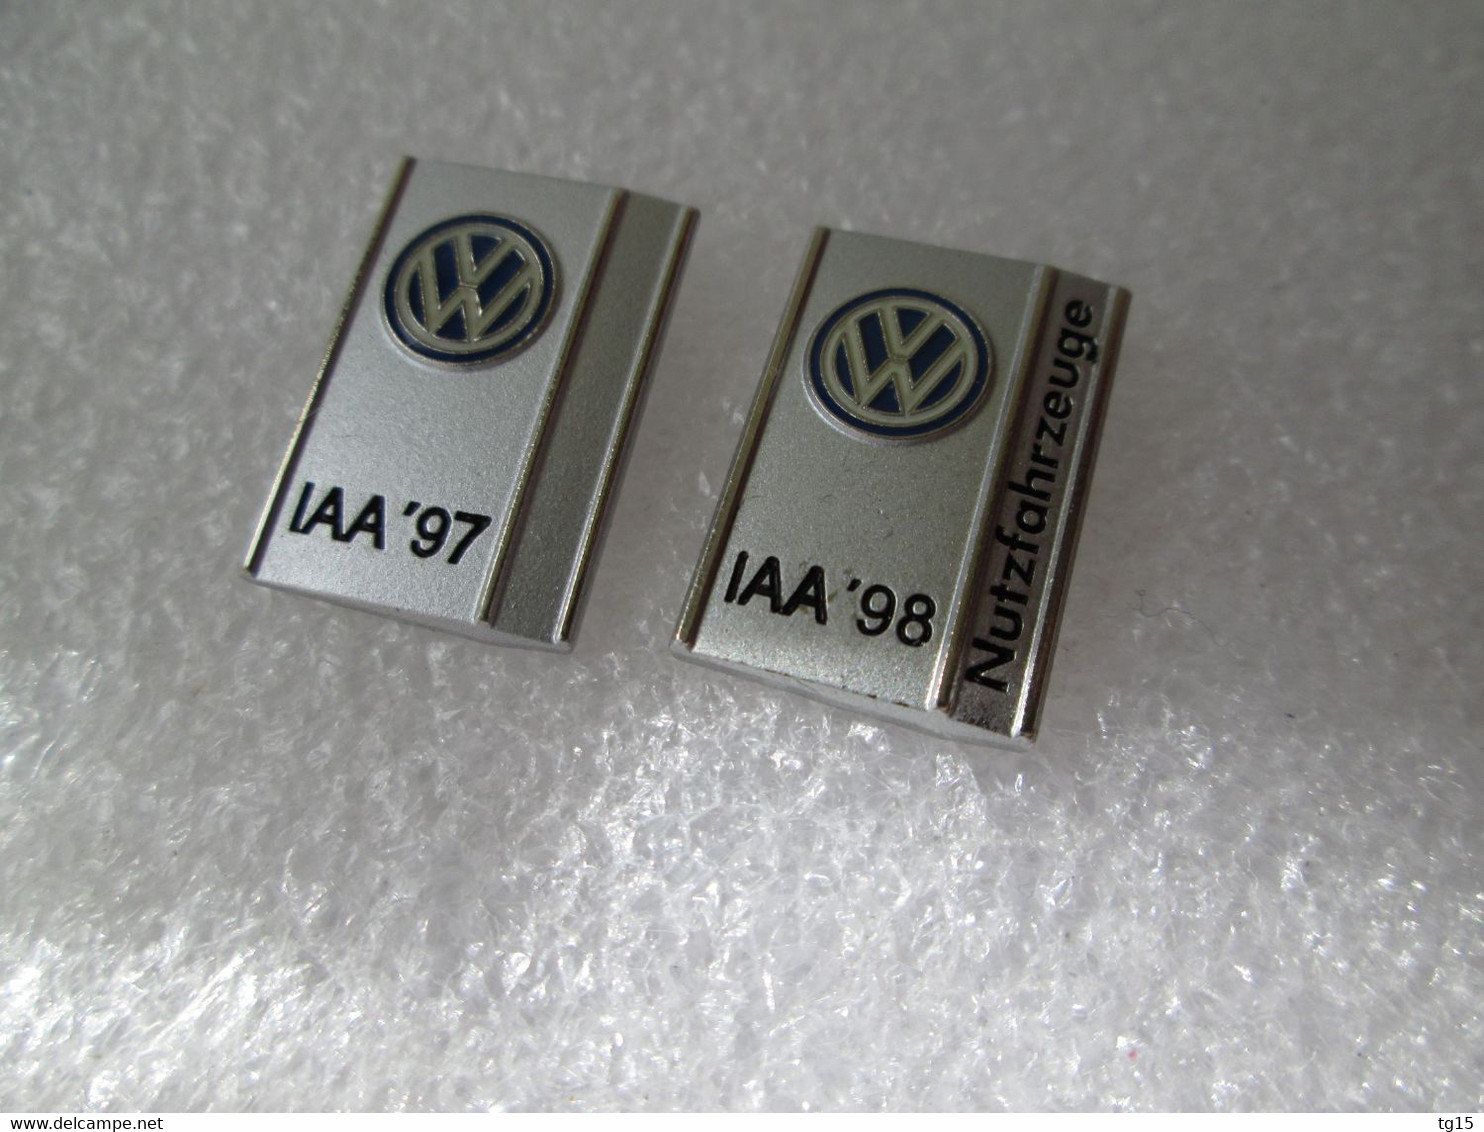 PIN'S  LOT 2    VOLKSWAGEN  IAA 97   IAA 98 - Volkswagen